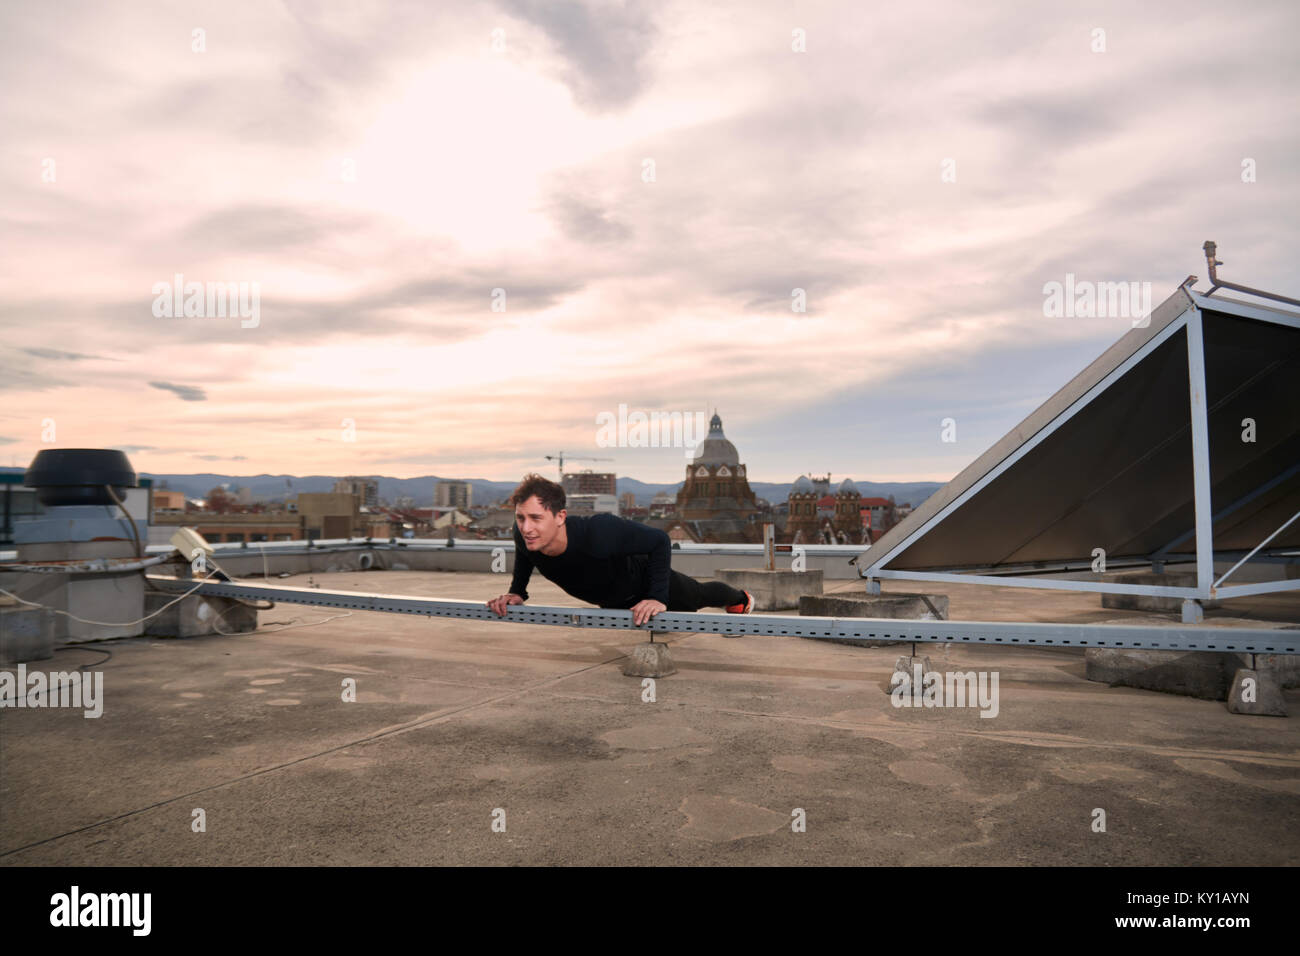 Un hombre joven, de ejercicios al aire libre en la azotea, centro urbano de techos, azoteas detrás, paisaje urbano Foto de stock